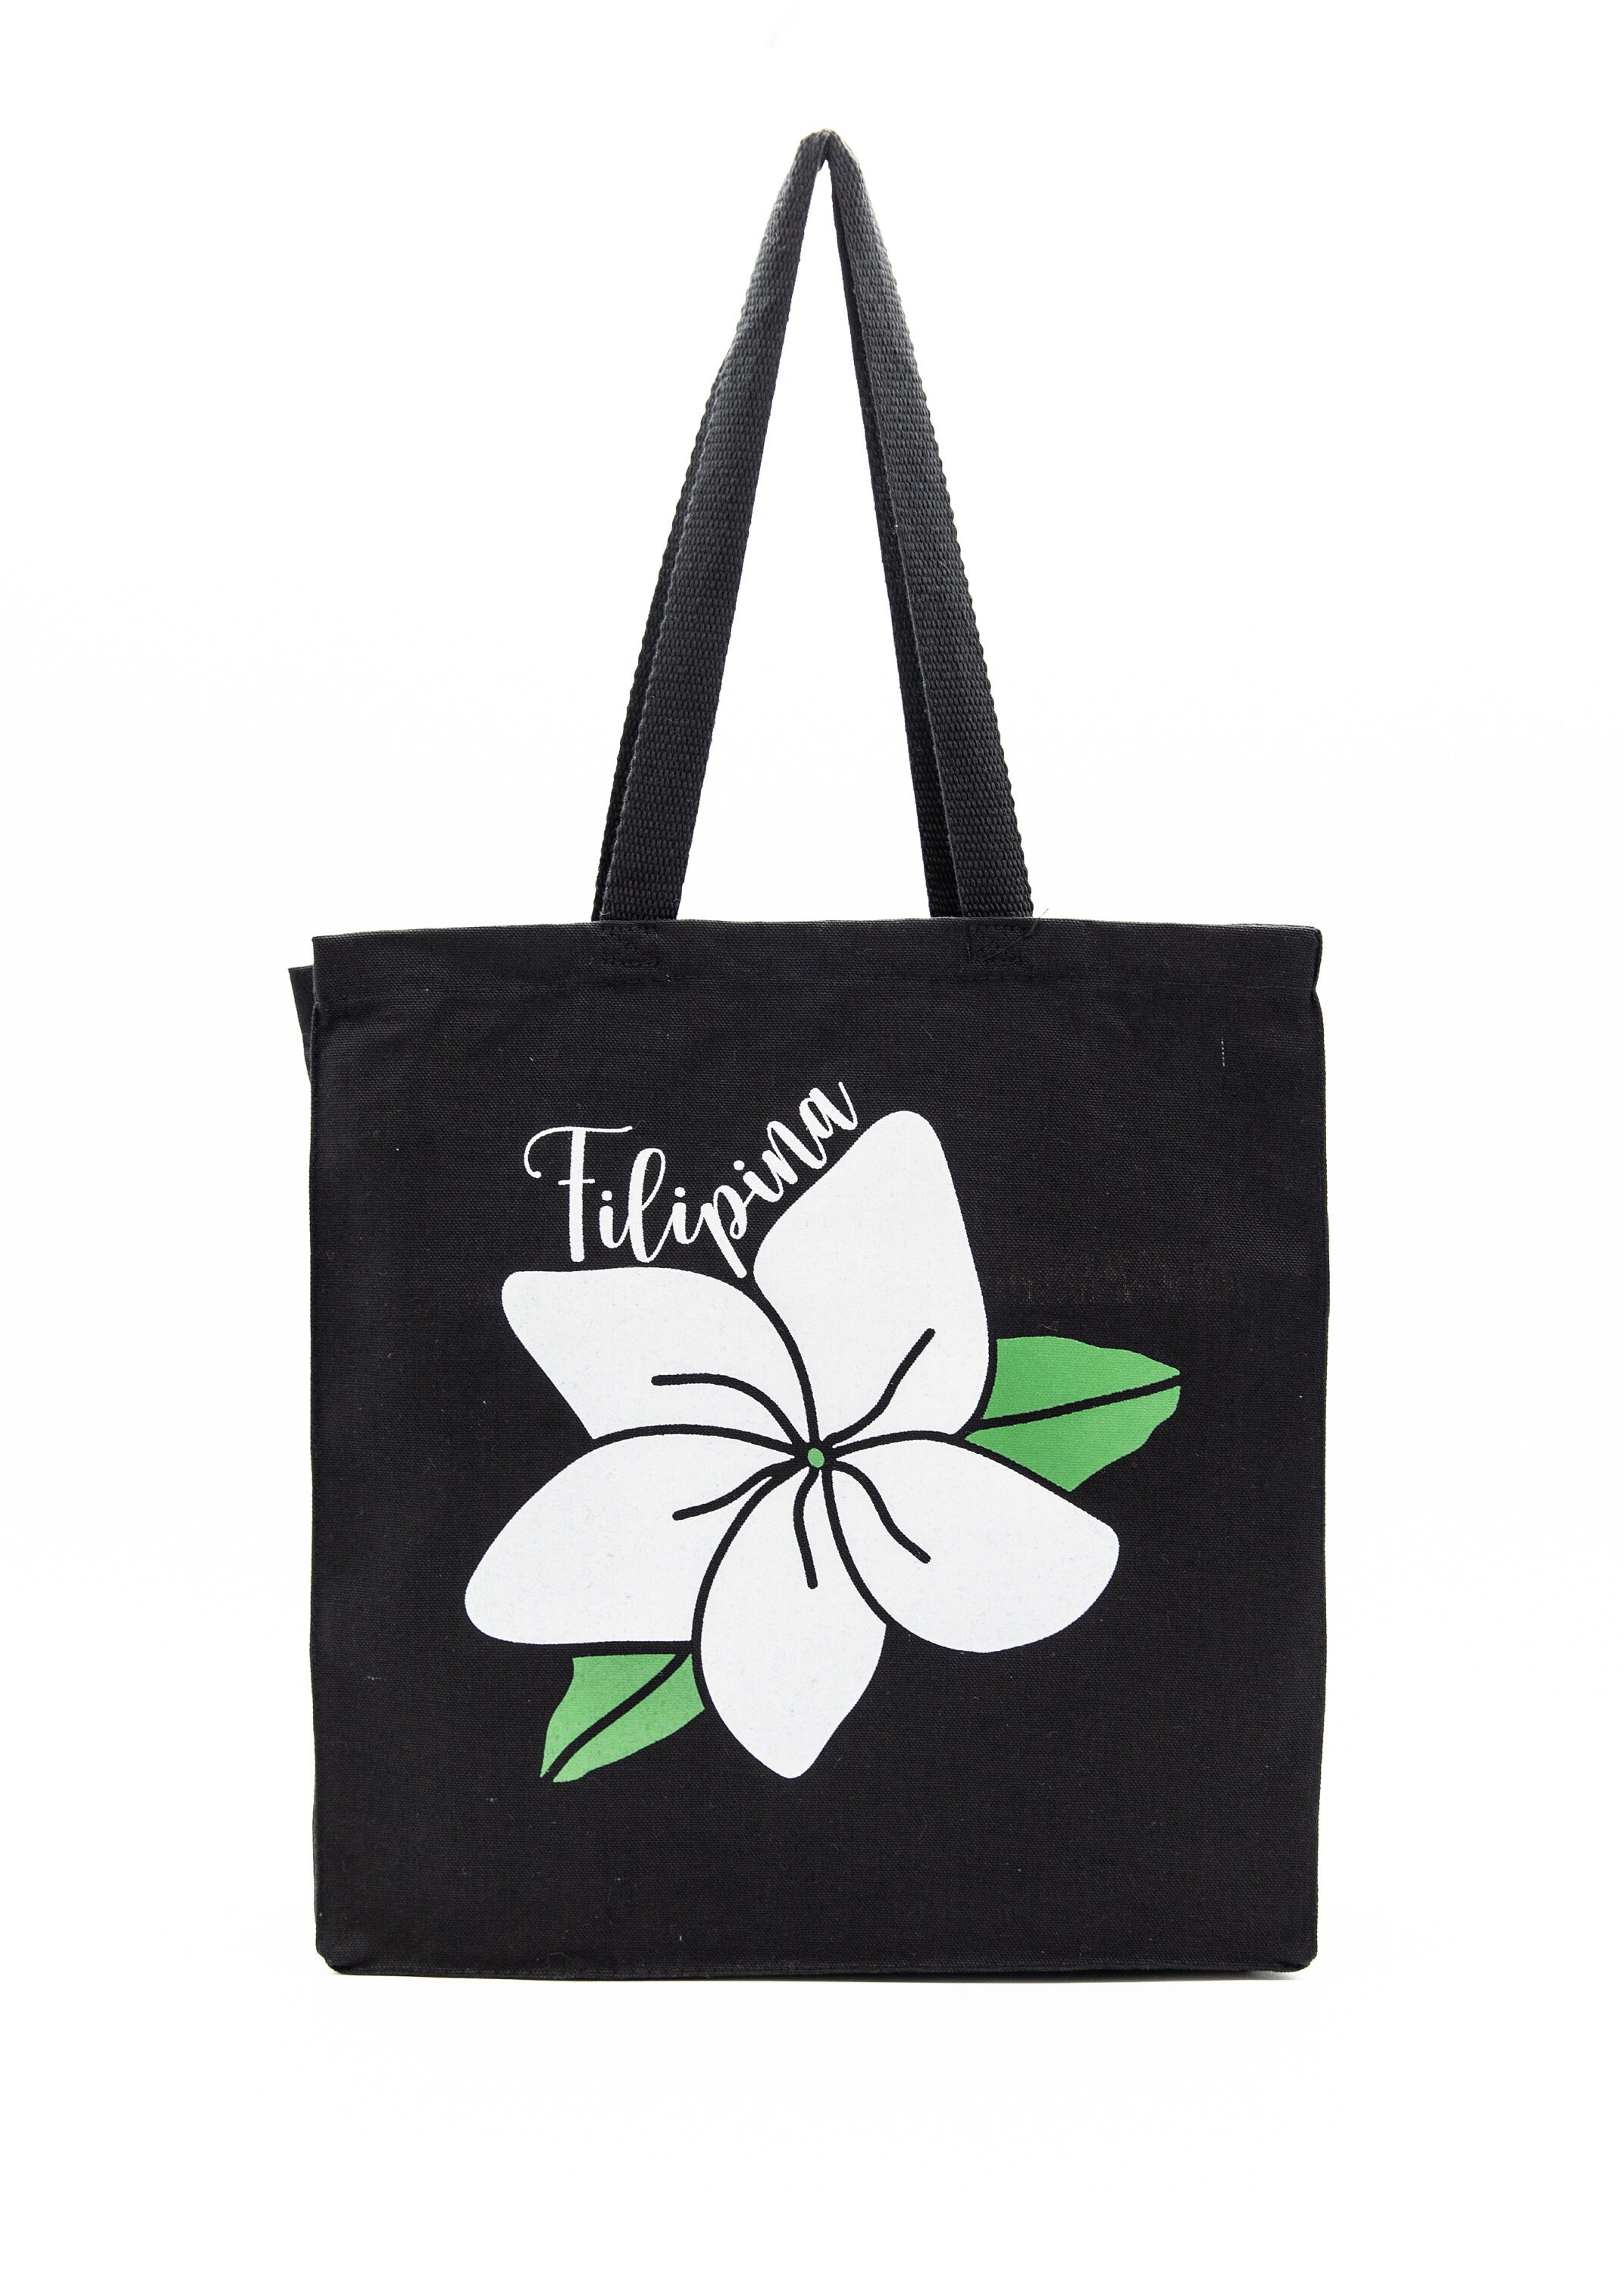 Sampaguita Flower Tote Bags, Filipino Tote Bags, Filipina, Shopping Bag, 14x15 Tote Bag, Natural/Black